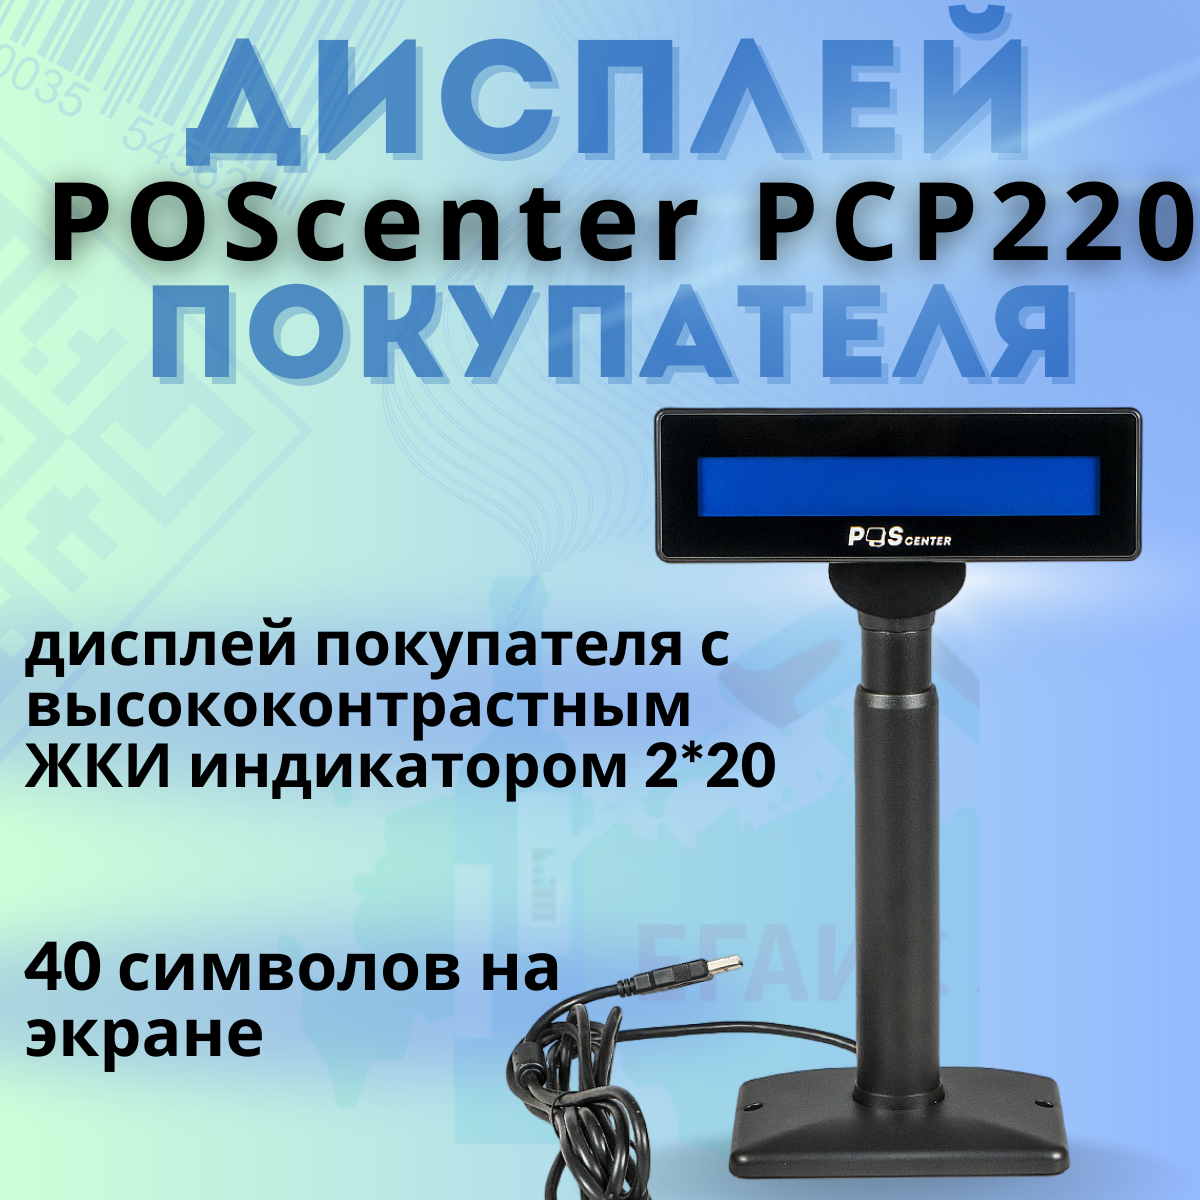 Дисплей покупателя Poscenter PCP220 (бело-голубой ЖКИ), подставка, USB кабель 3м, черный